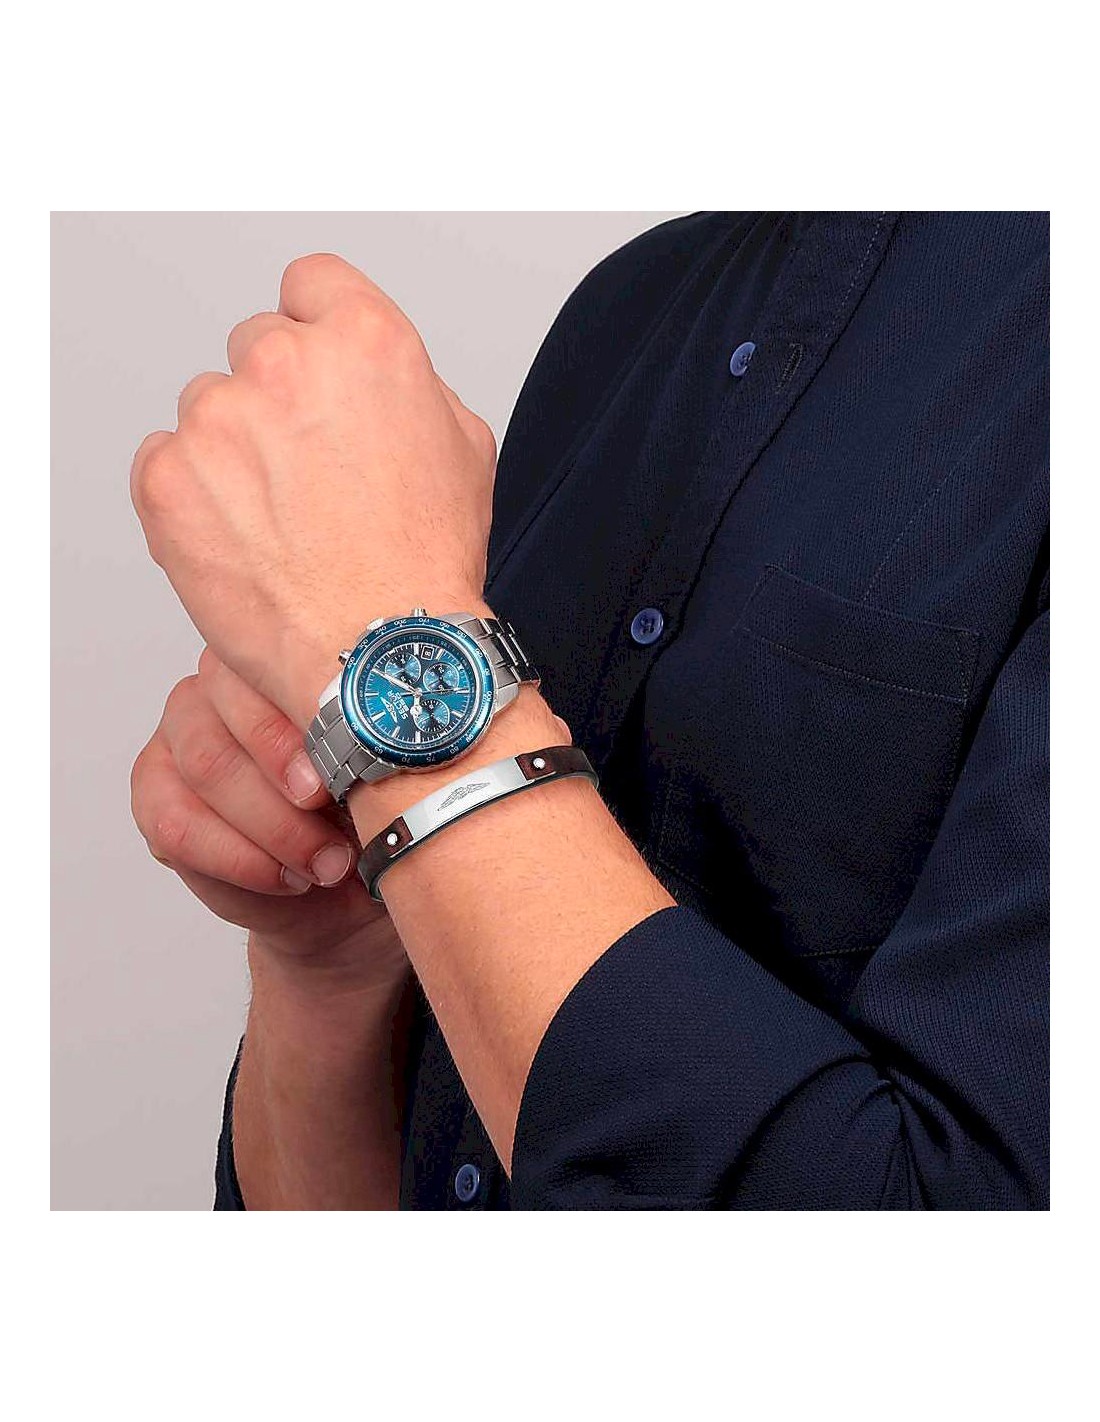 Orologio SECTOR uomo 550 cronografo acciaio / blu + bracciale